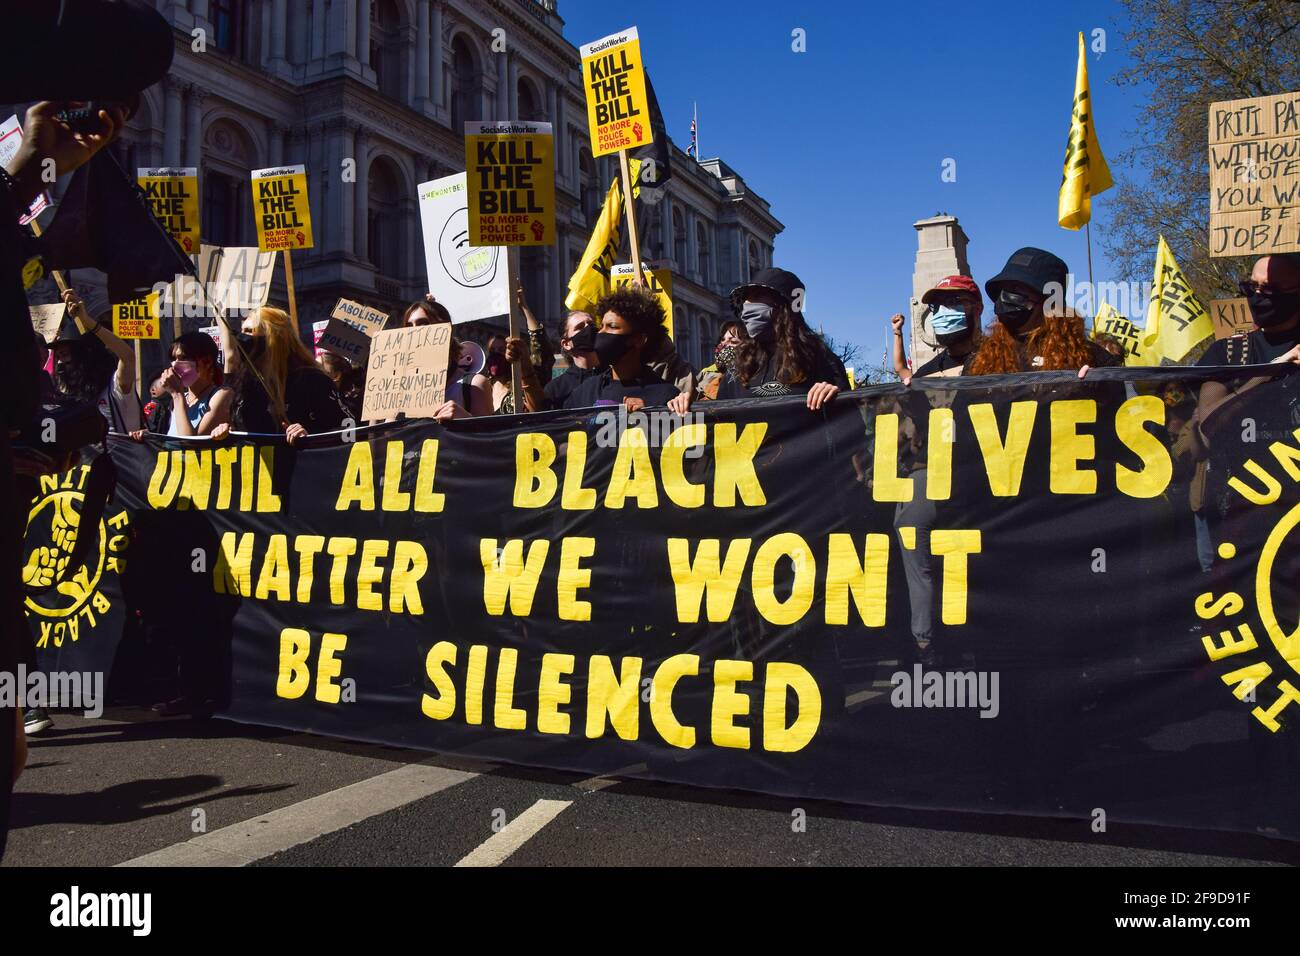 Les manifestants tiennent une bannière et des pancartes sur la question de la vie noire lors de la manifestation tuer le projet de loi.une fois de plus, des foules ont manifesté contre la police, le crime, la peine et le projet de loi sur les tribunaux. Banque D'Images